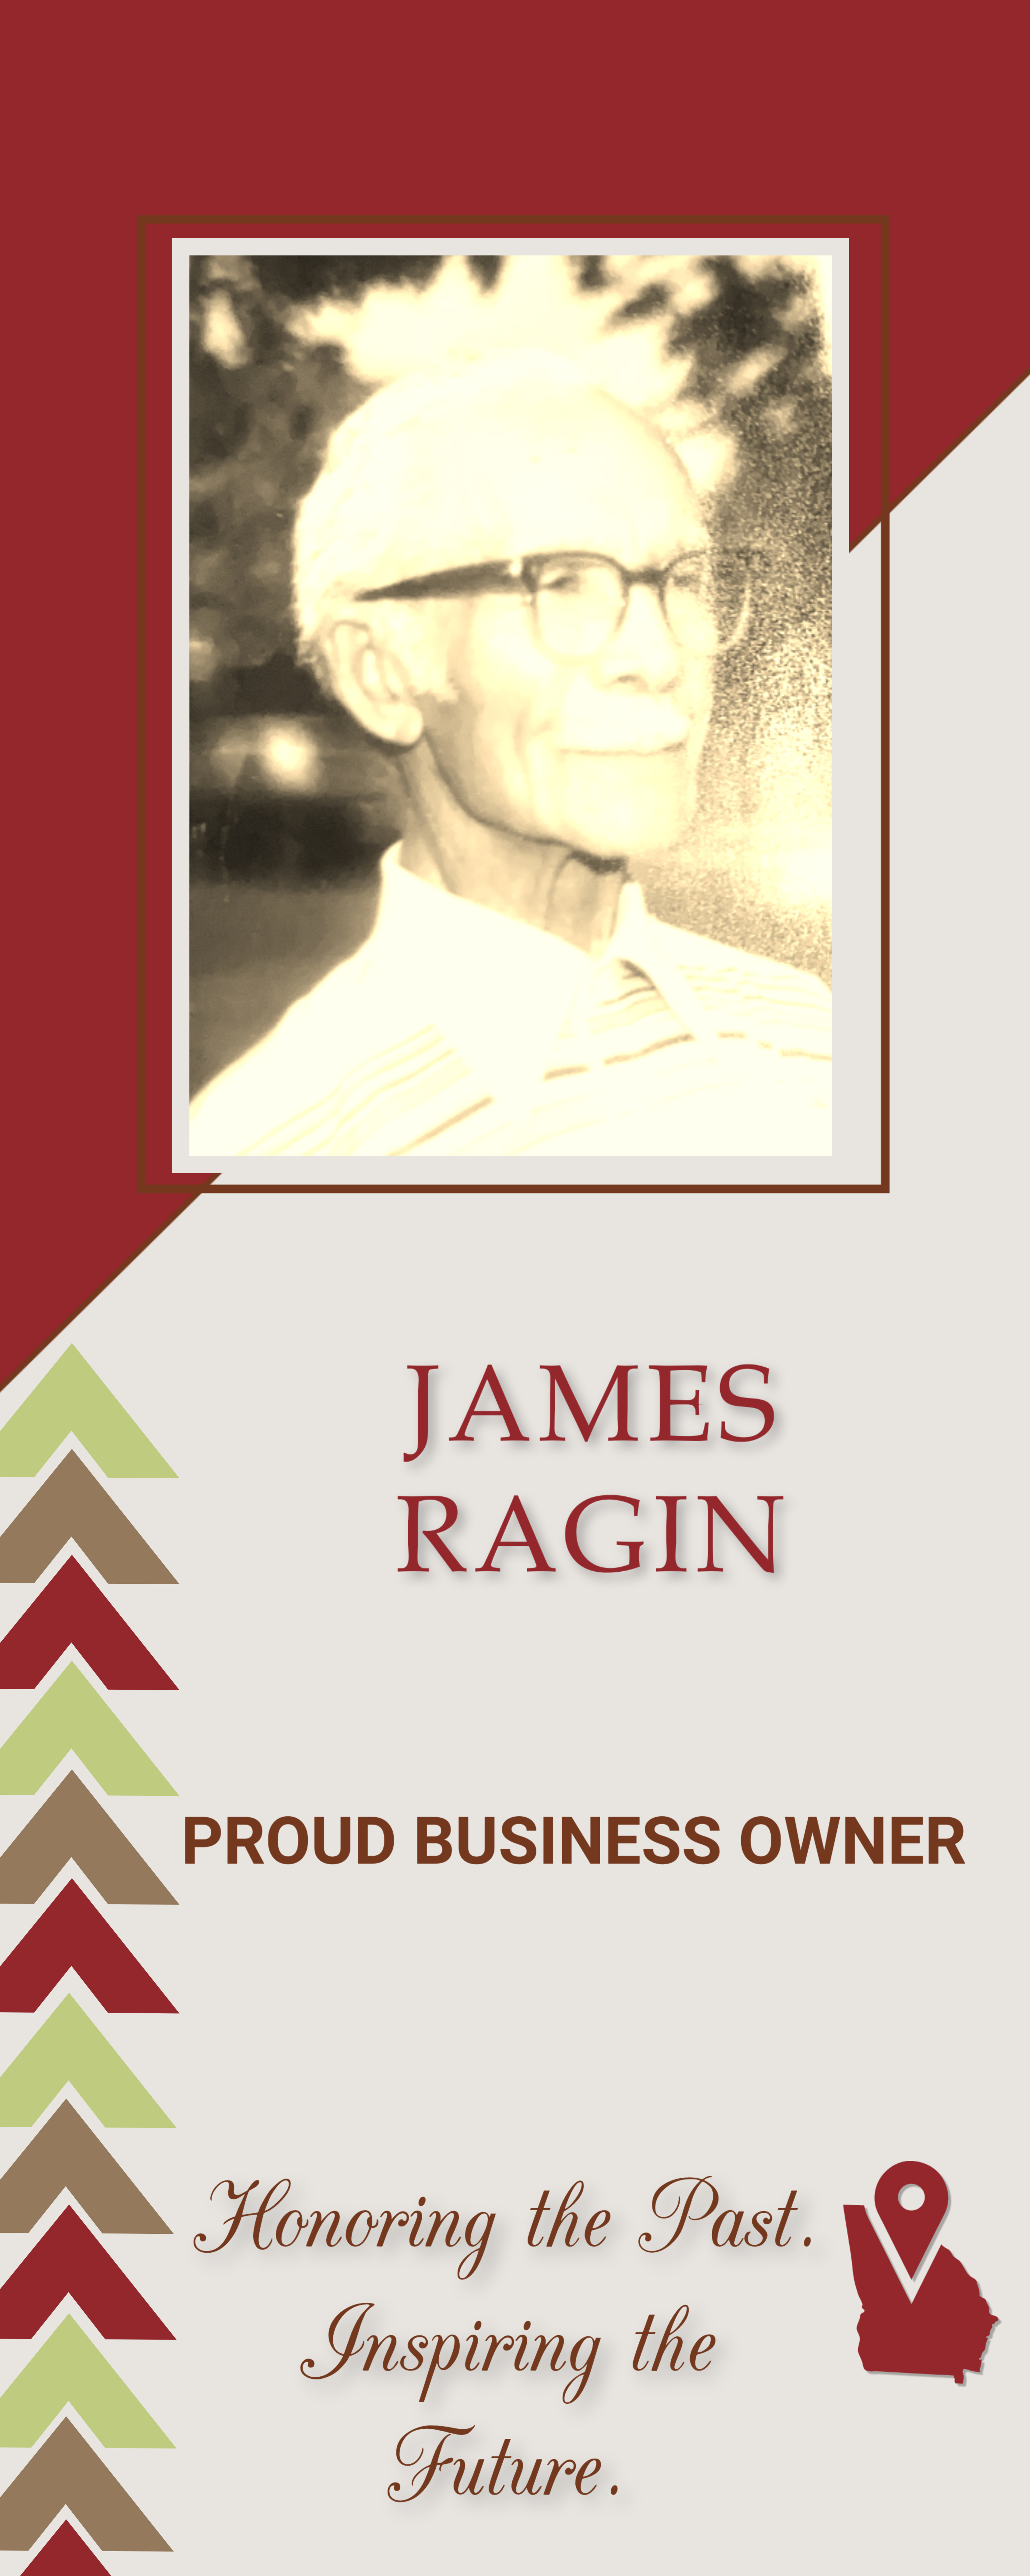 James Ragin